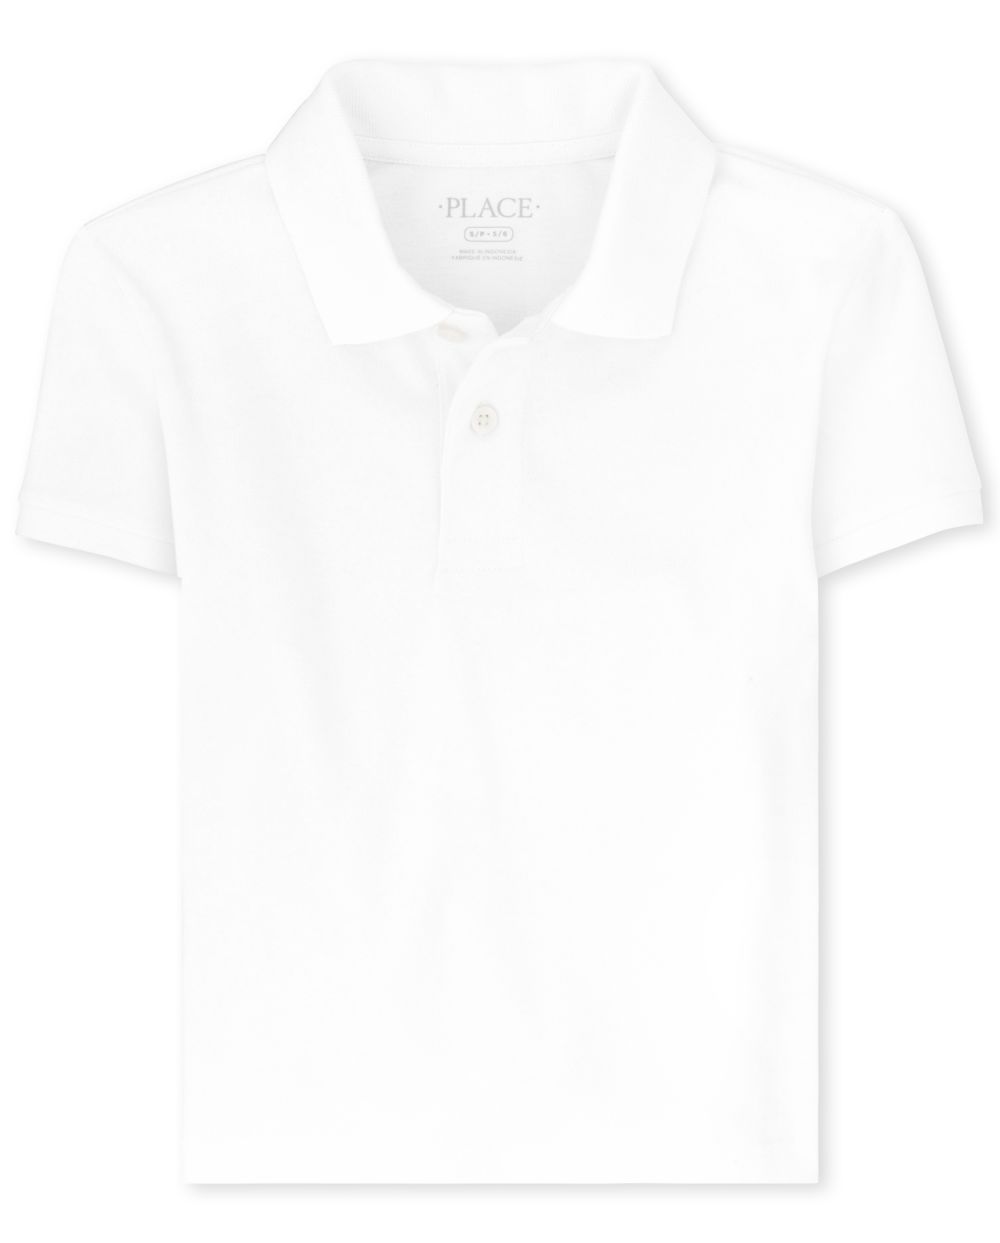 The Children's Place Boys Uniform Stain Resistant Stretch Pique Polo - White - L (10/12)